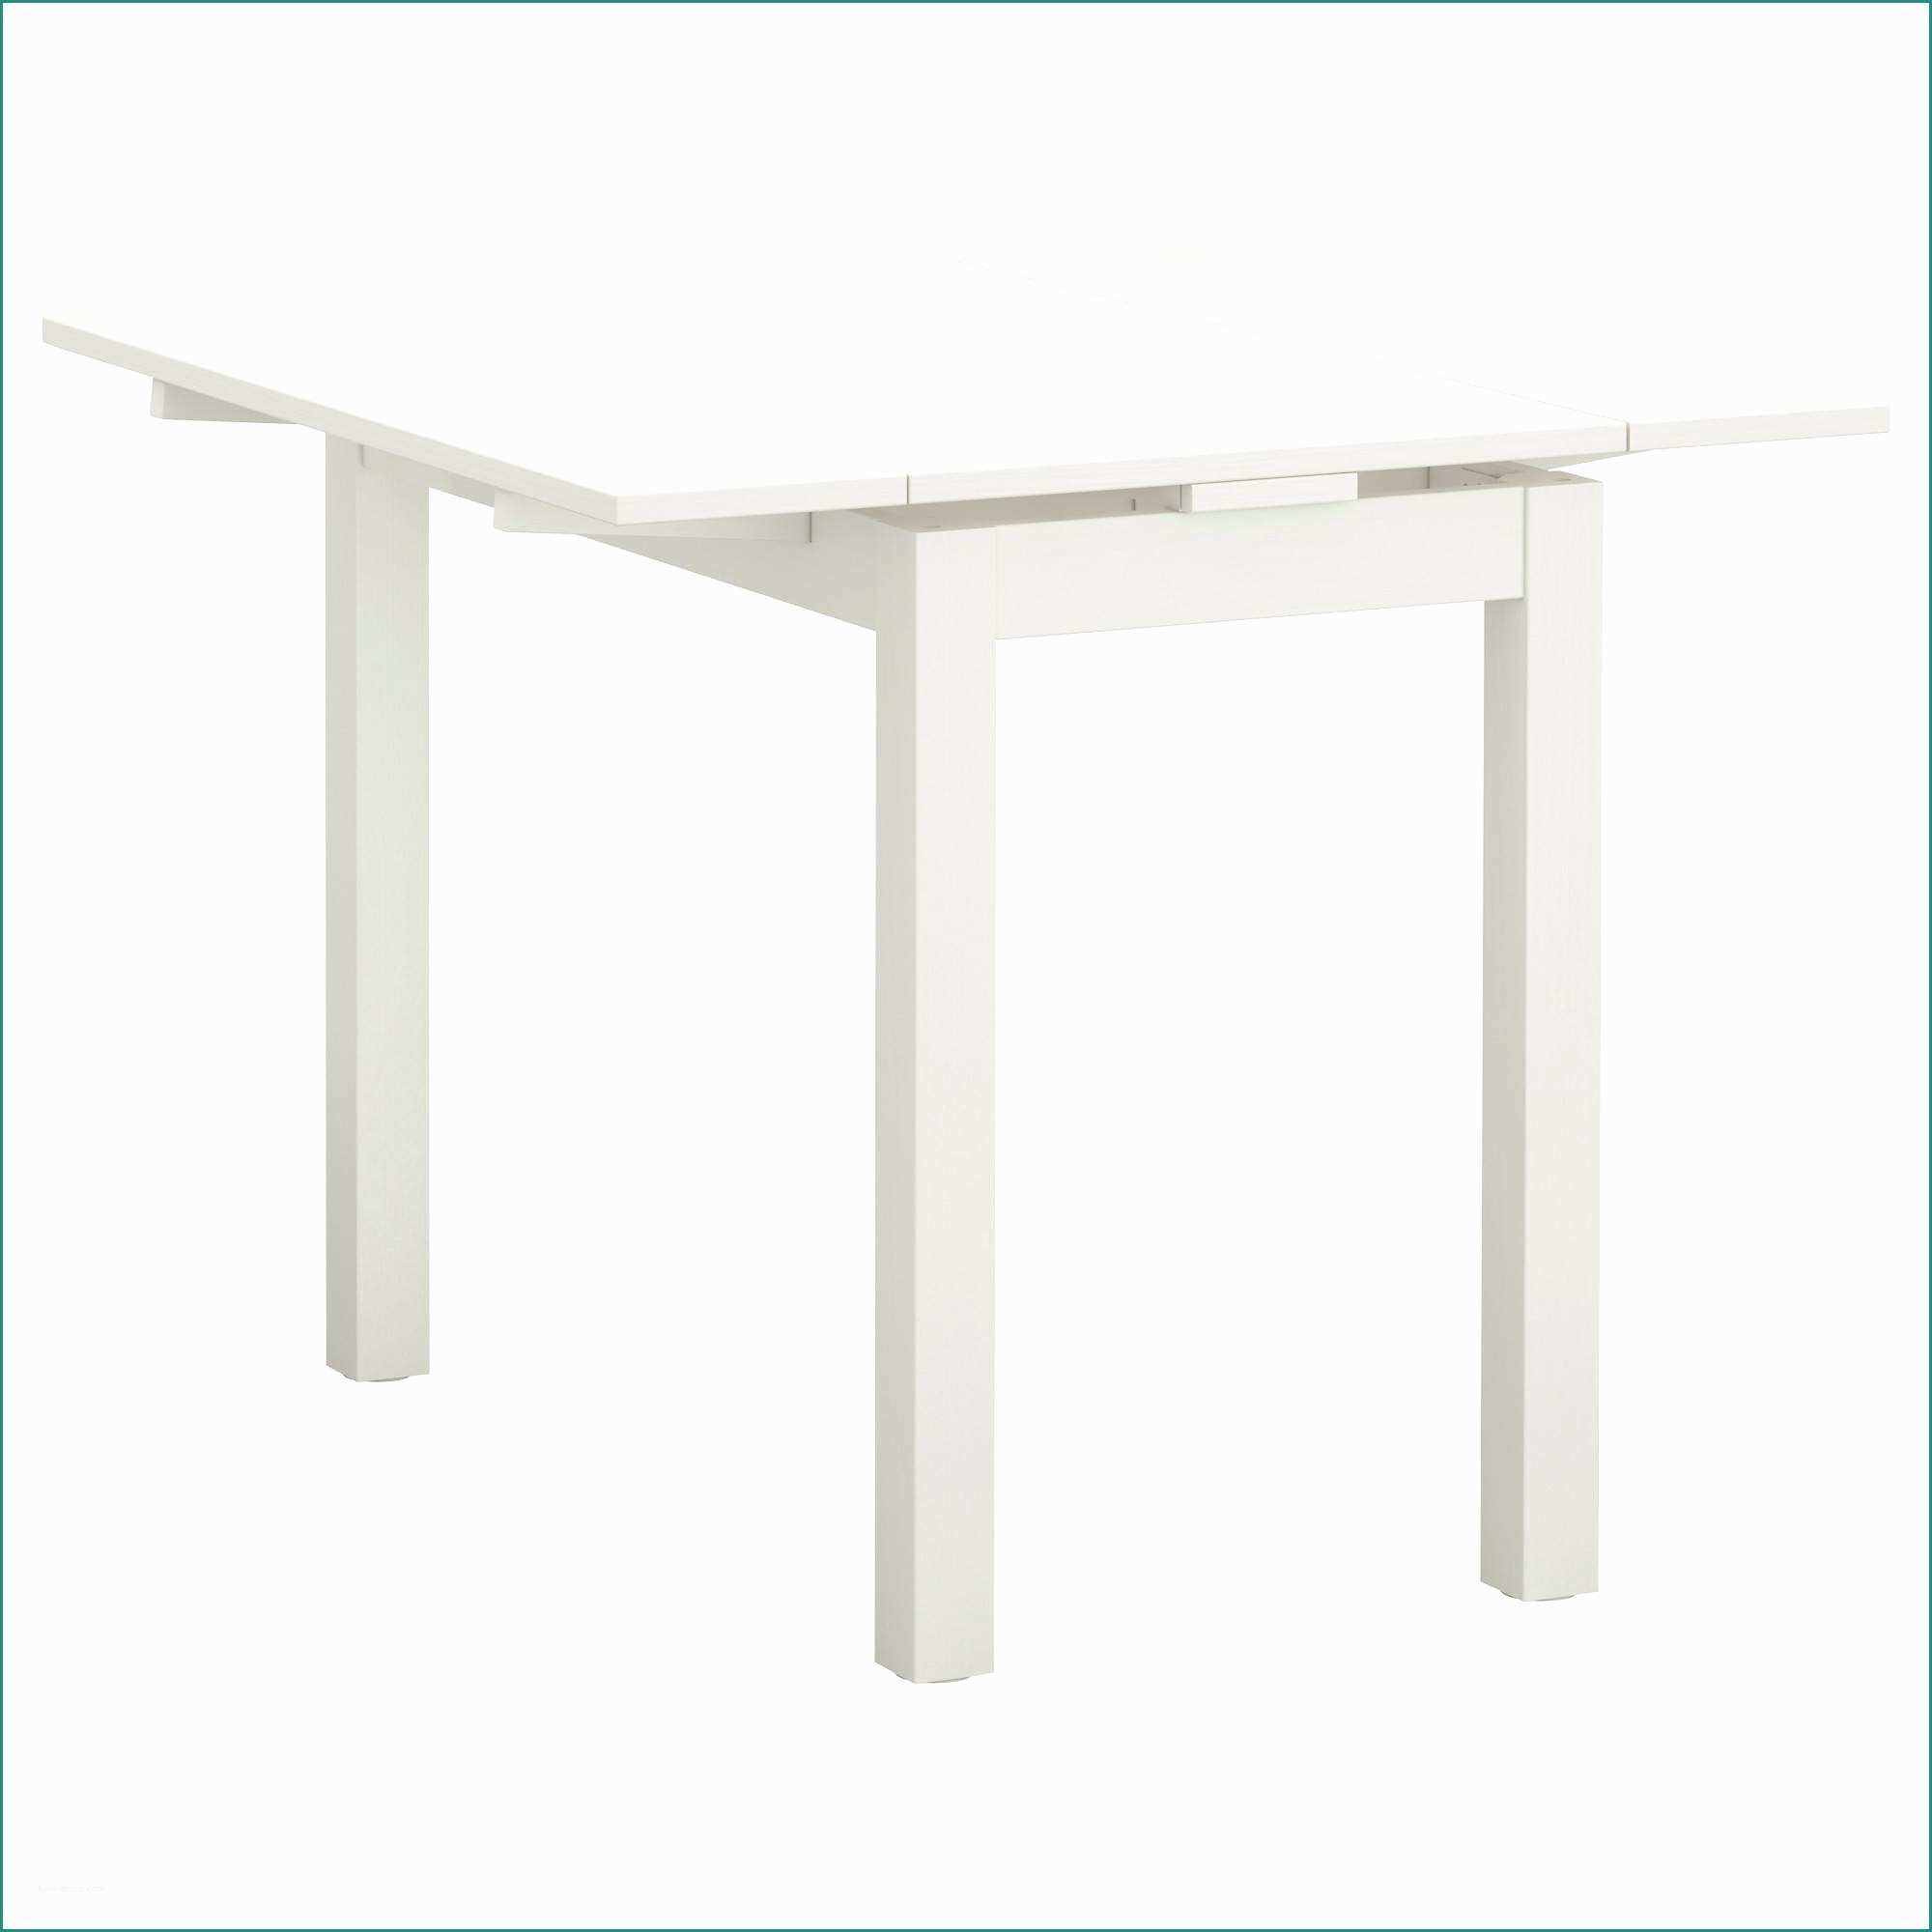 Laminato In Cucina E 30 Elegante Tavolo Da Cucina Ikea Graphics